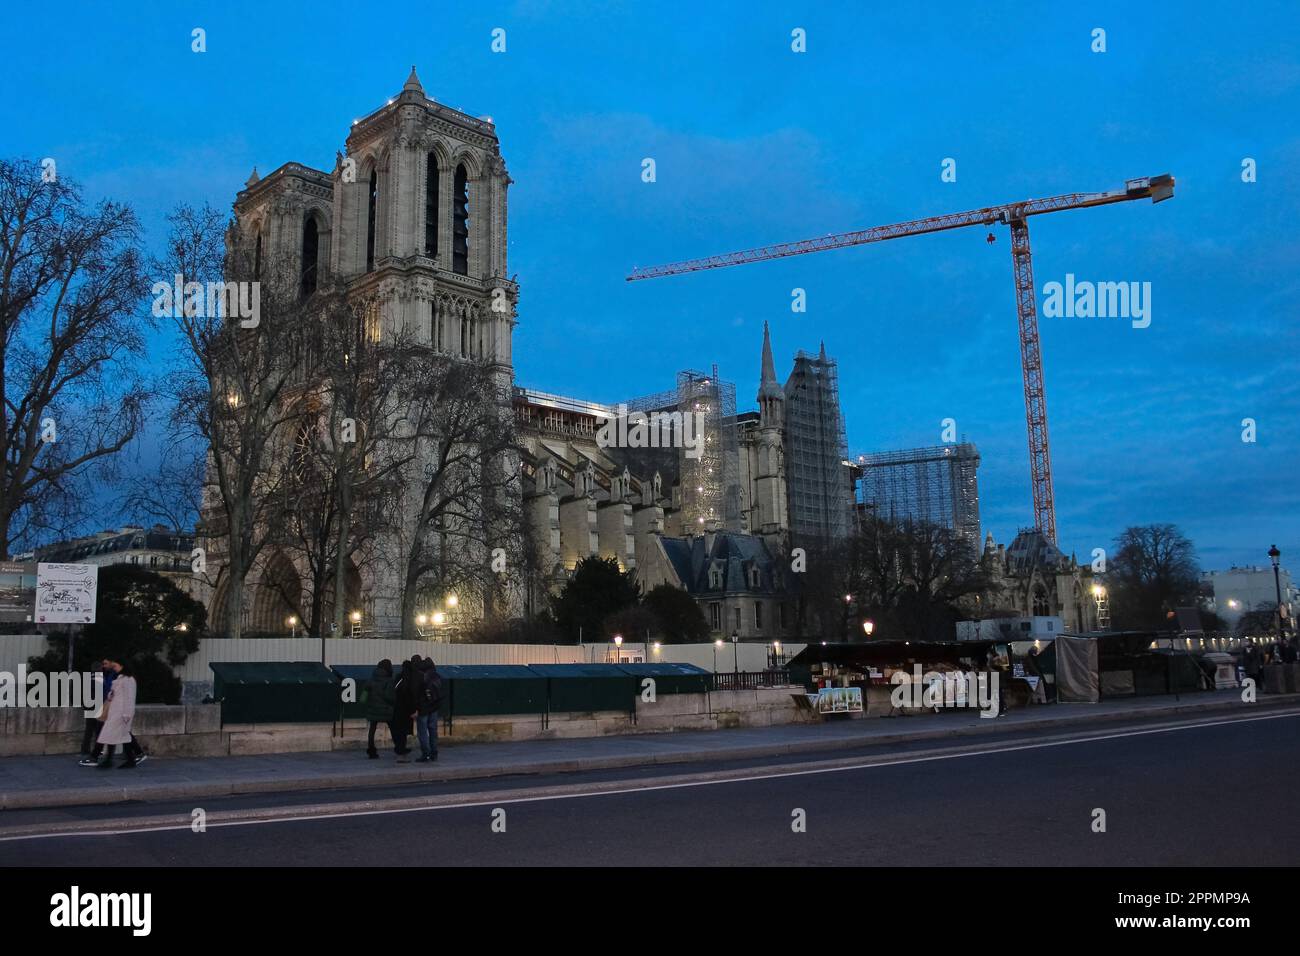 Notre Dame de Paris during reconstruction work. Stock Photo